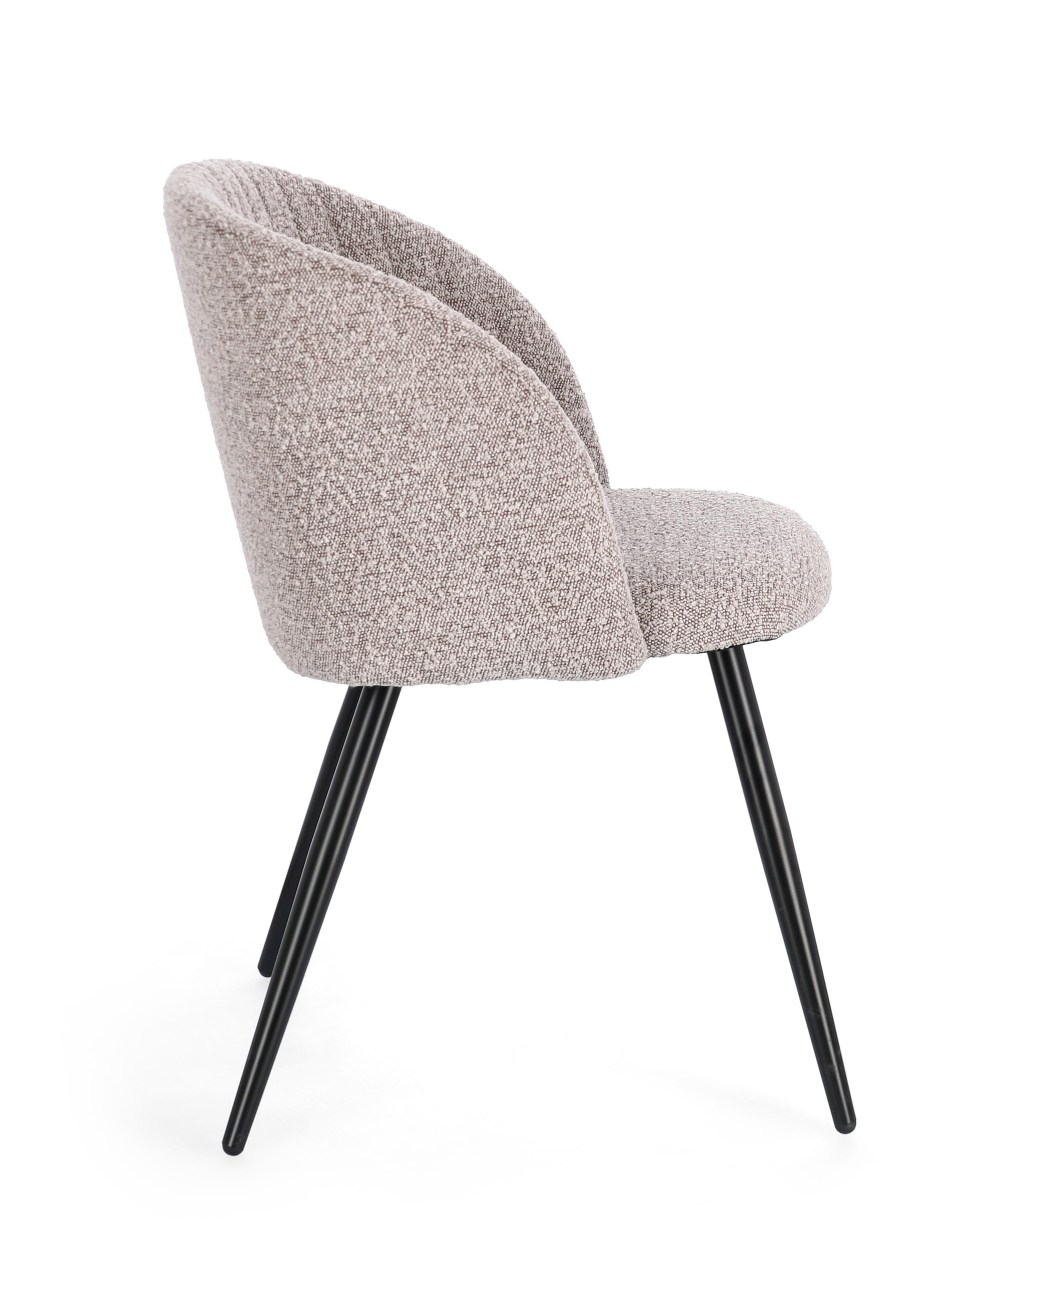 Der Esszimmerstuhl Queen überzeugt mit seinem modernen Stil. Gefertigt wurde er aus Boucle-Stoff, welcher einen braunen Farbton besitzt. Das Gestell ist aus Metall und hat eine Schwarzen Farbe. Der Stuhl besitzt eine Sitzhöhe von 49 cm.